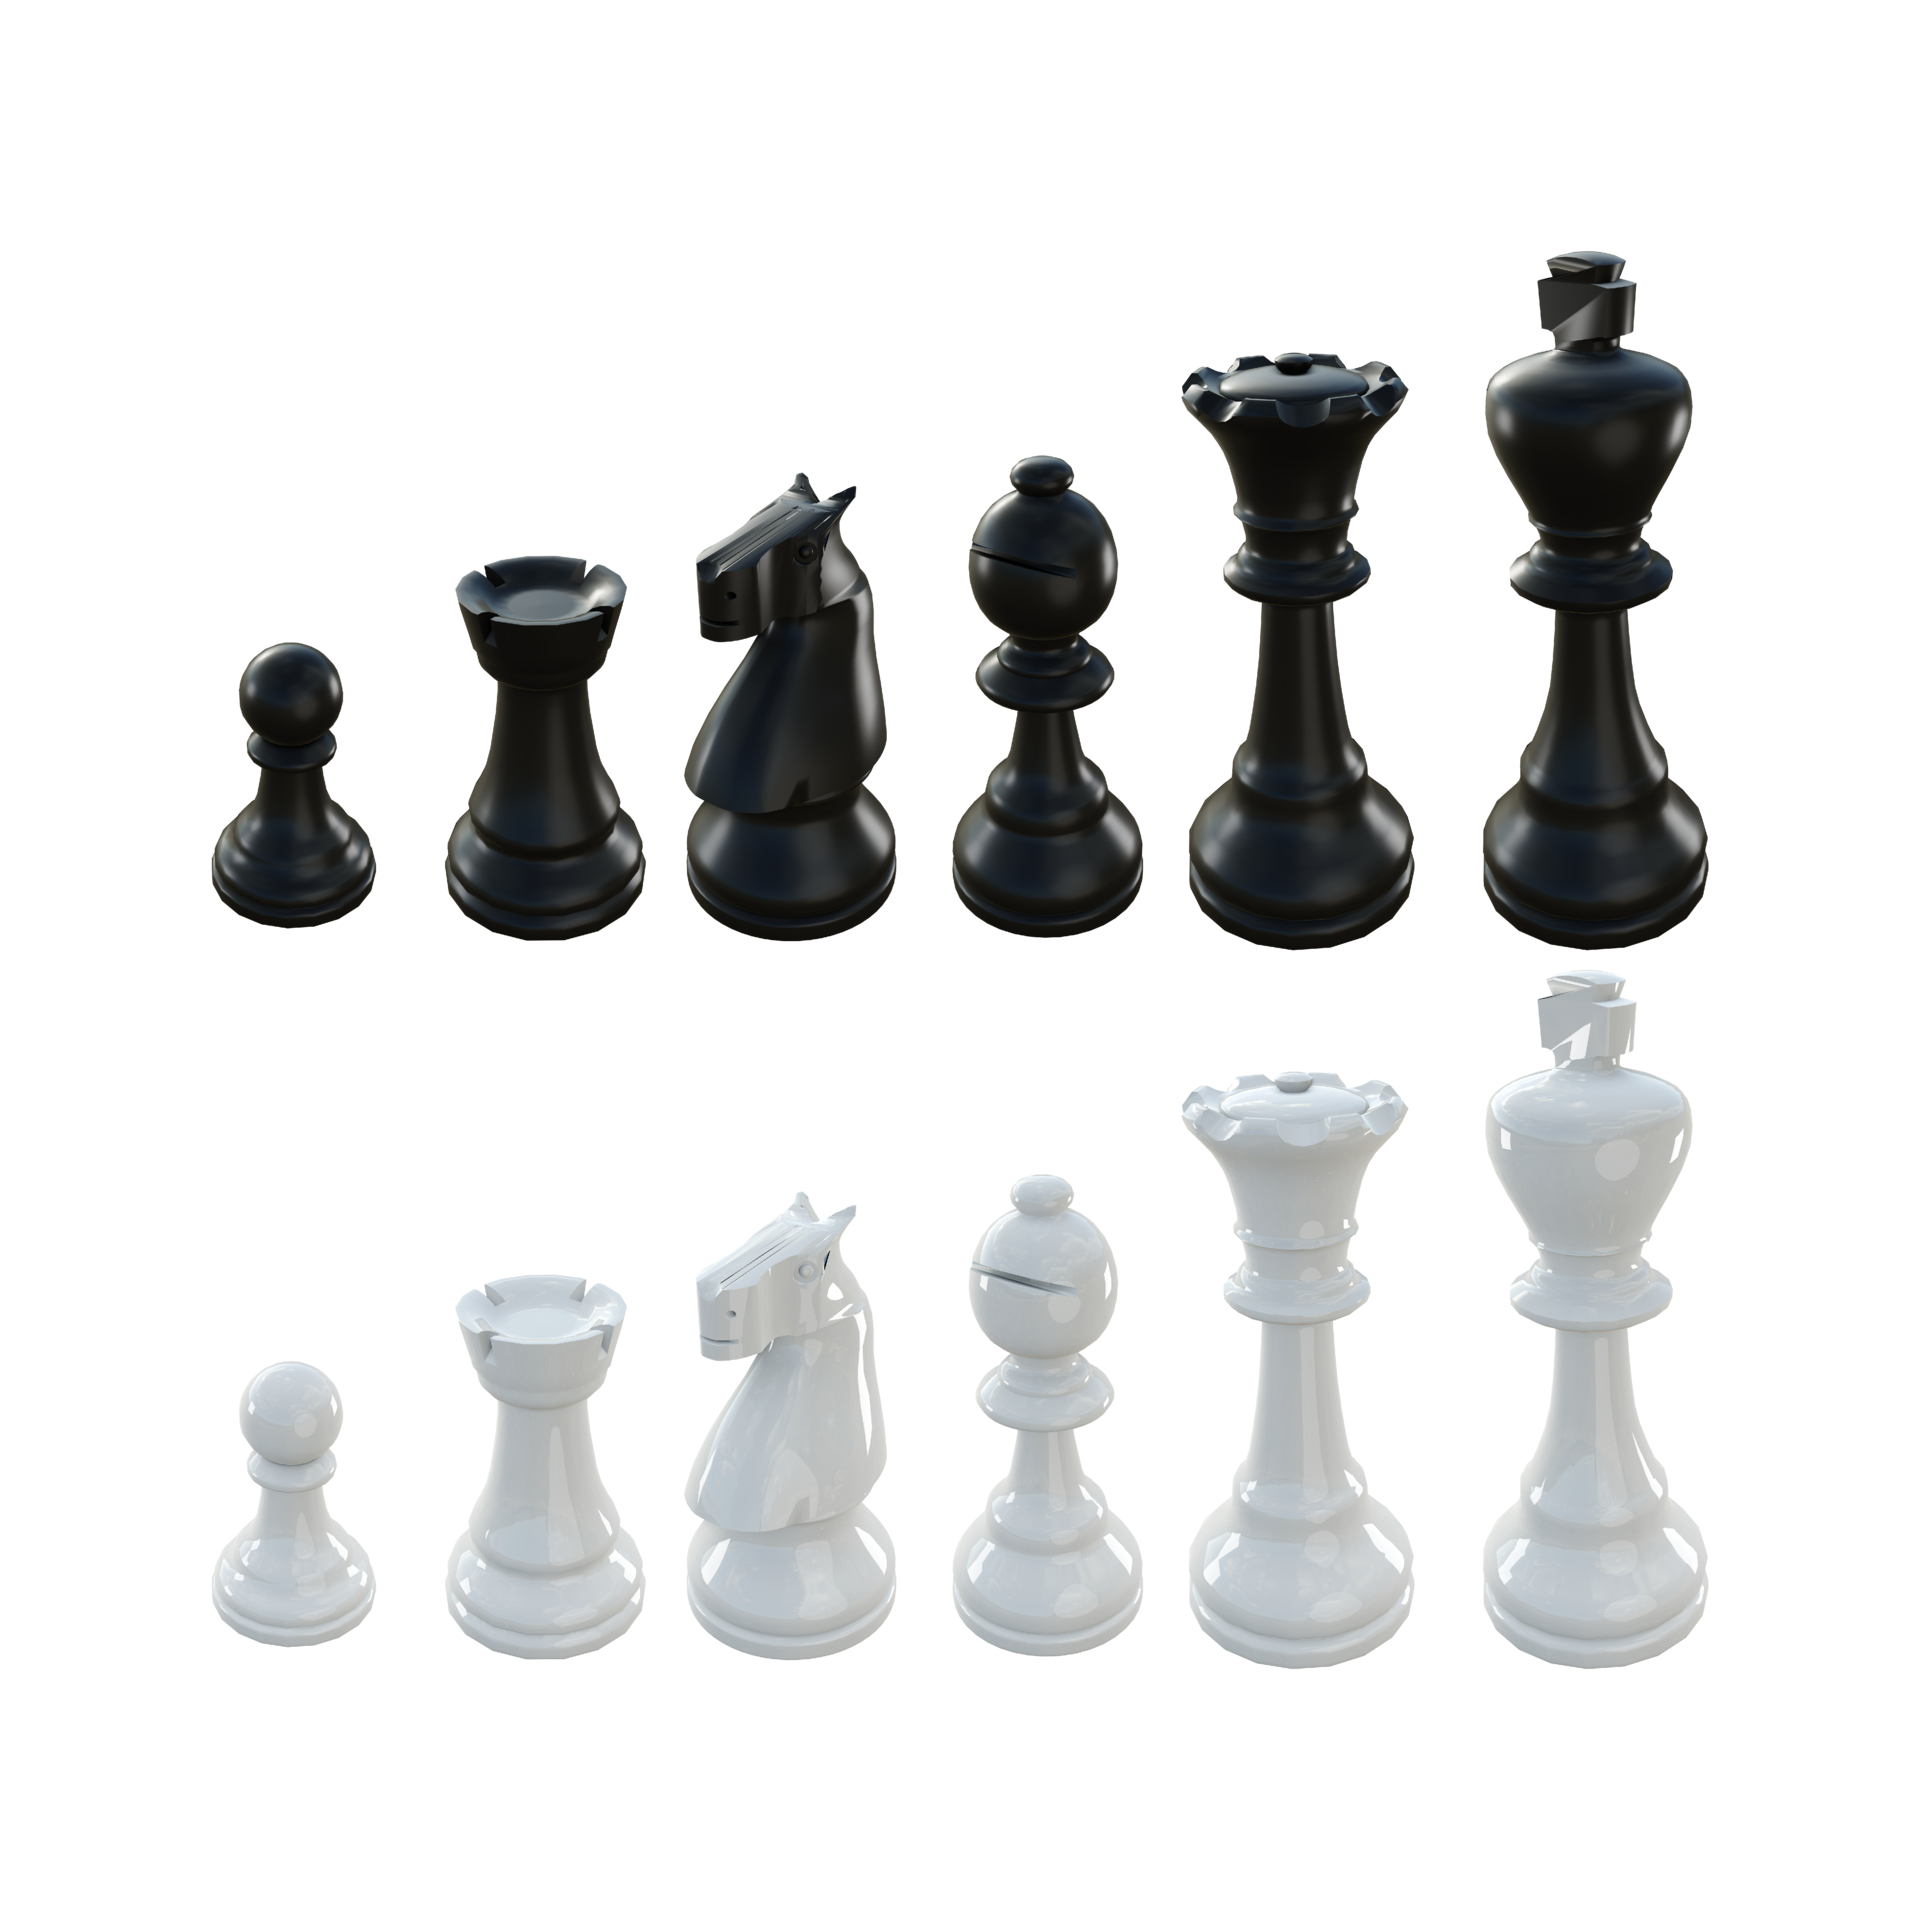 peças de xadrez rei e soldado em fundo transparente. conceito de